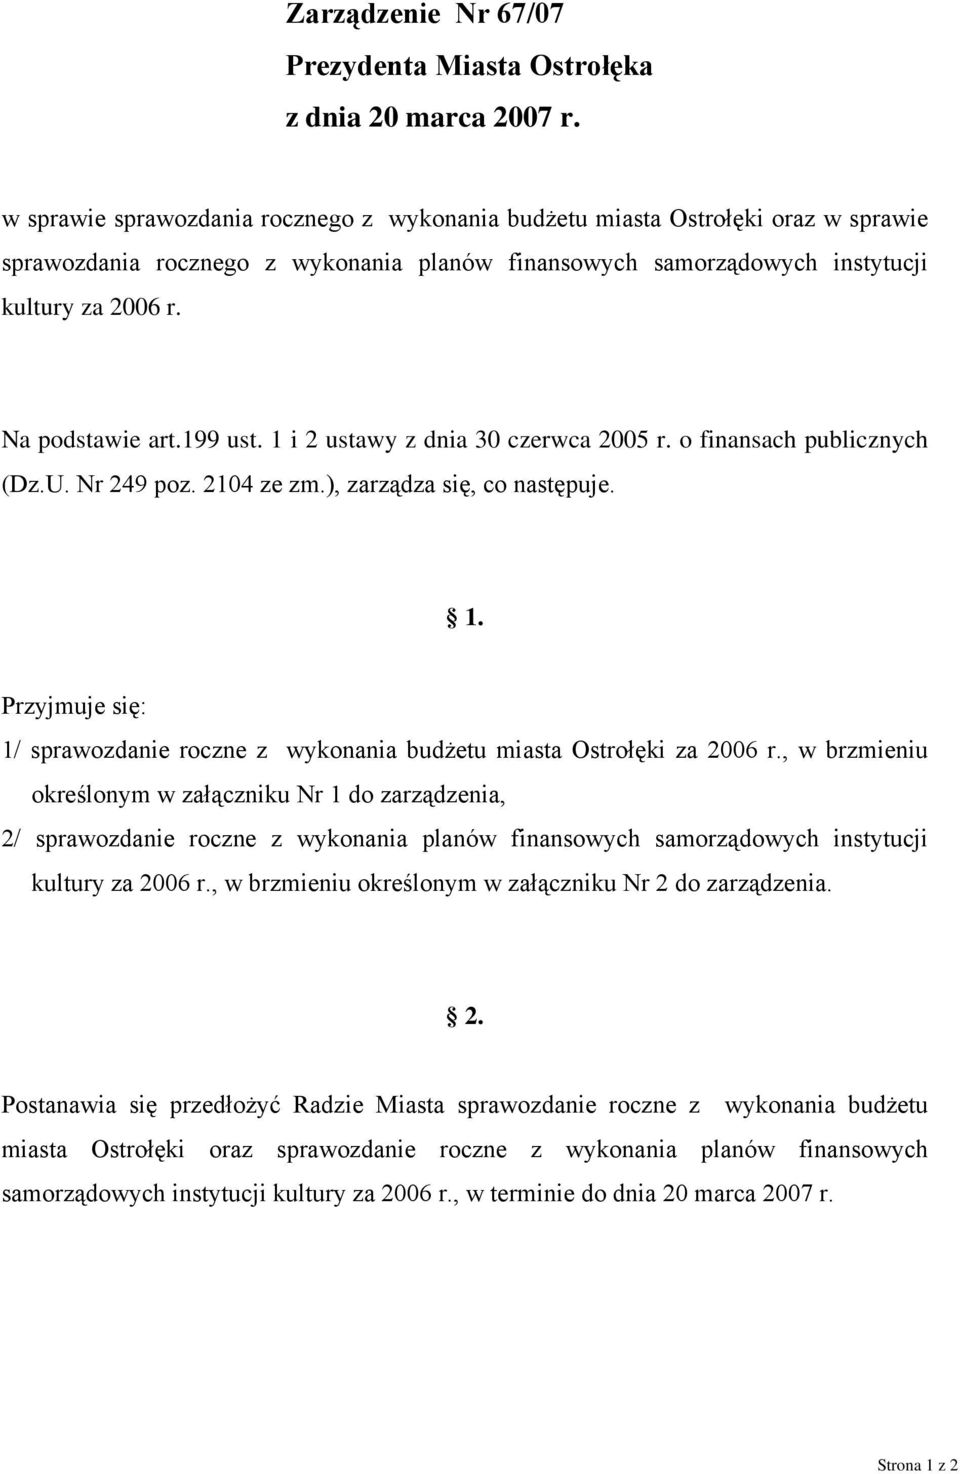 199 ust. 1 i 2 ustawy z dnia 30 czerwca 2005 r. o finansach publicznych (Dz.U. Nr 249 poz. 2104 ze zm.), zarządza się, co następuje. 1. Przyjmuje się: 1/ sprawozdanie roczne z wykonania budżetu miasta Ostrołęki za 2006 r.